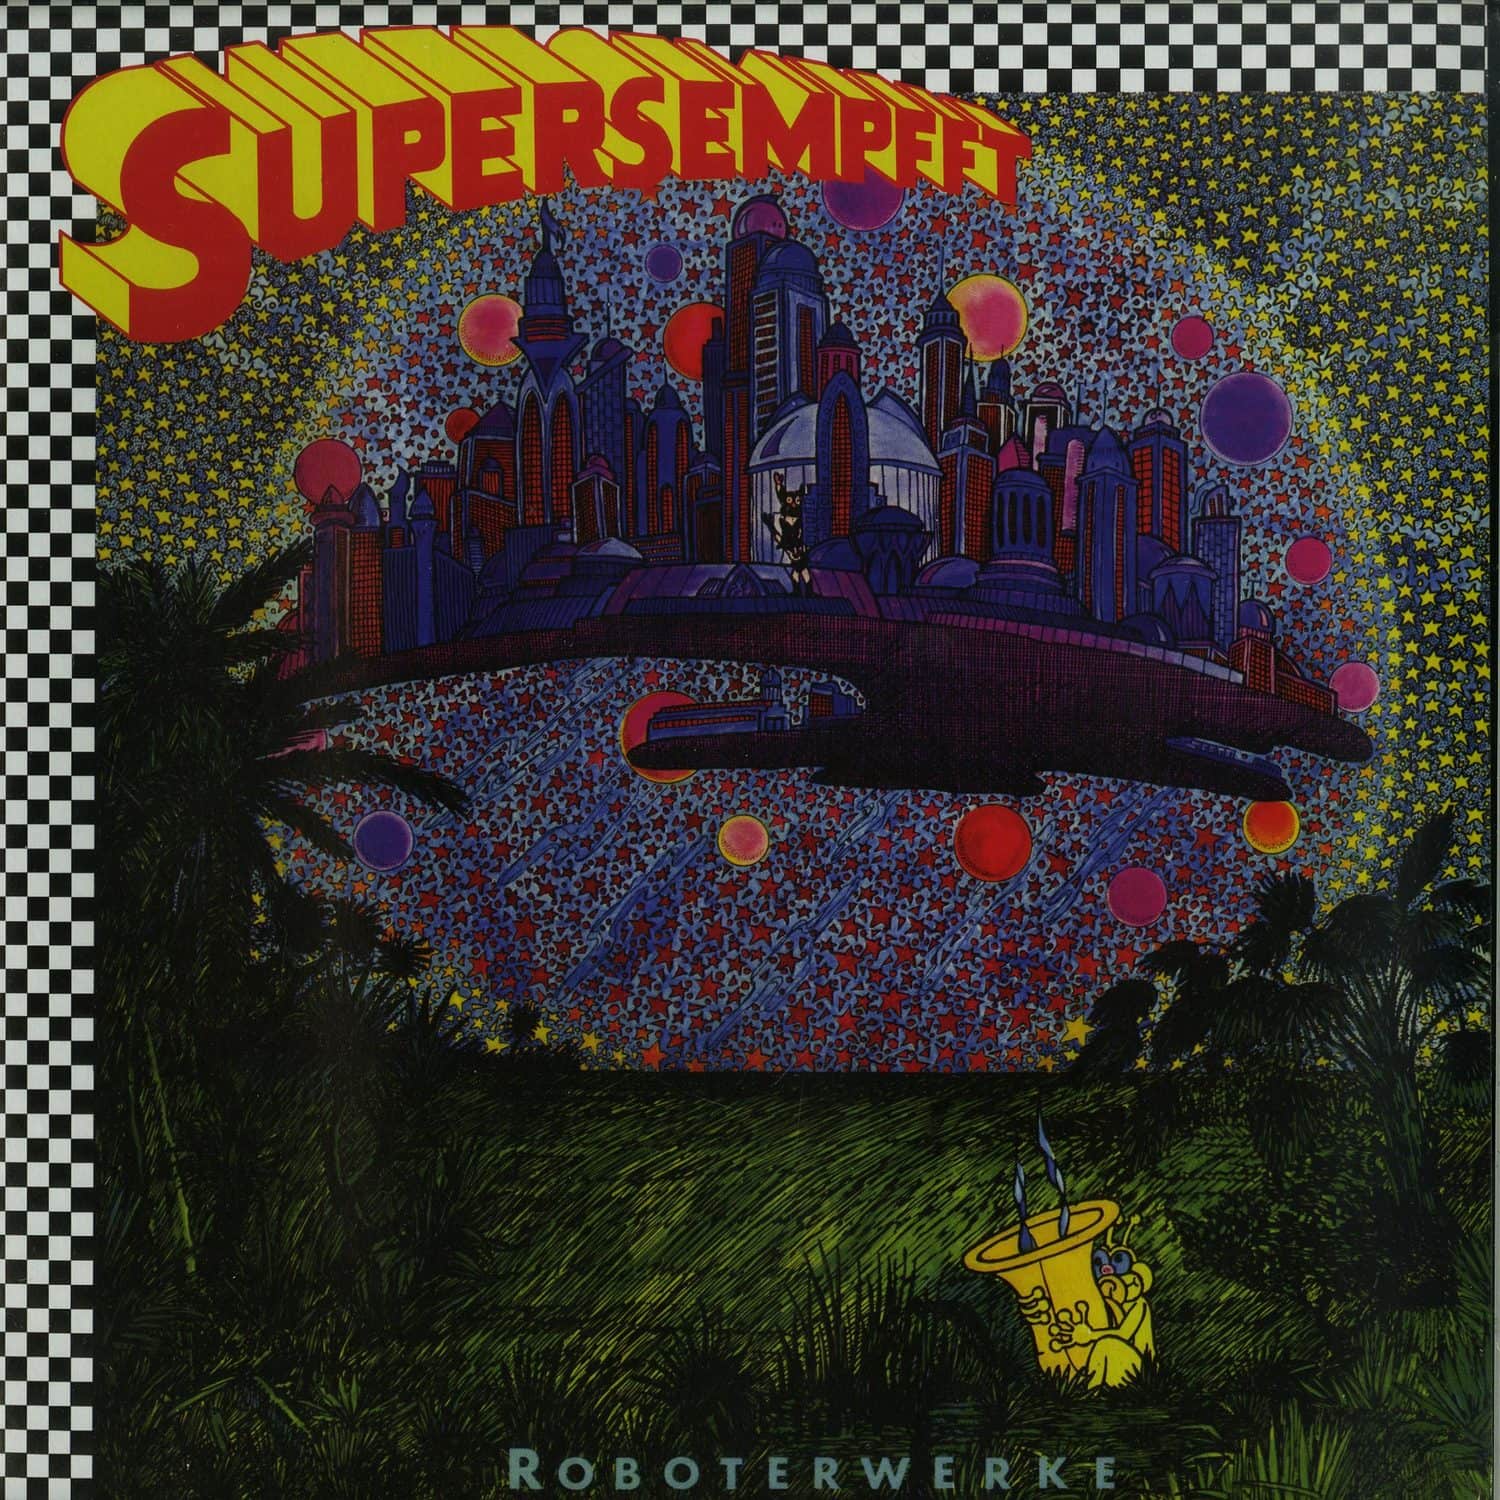 Supersempfft - ROBOTERWERKE 